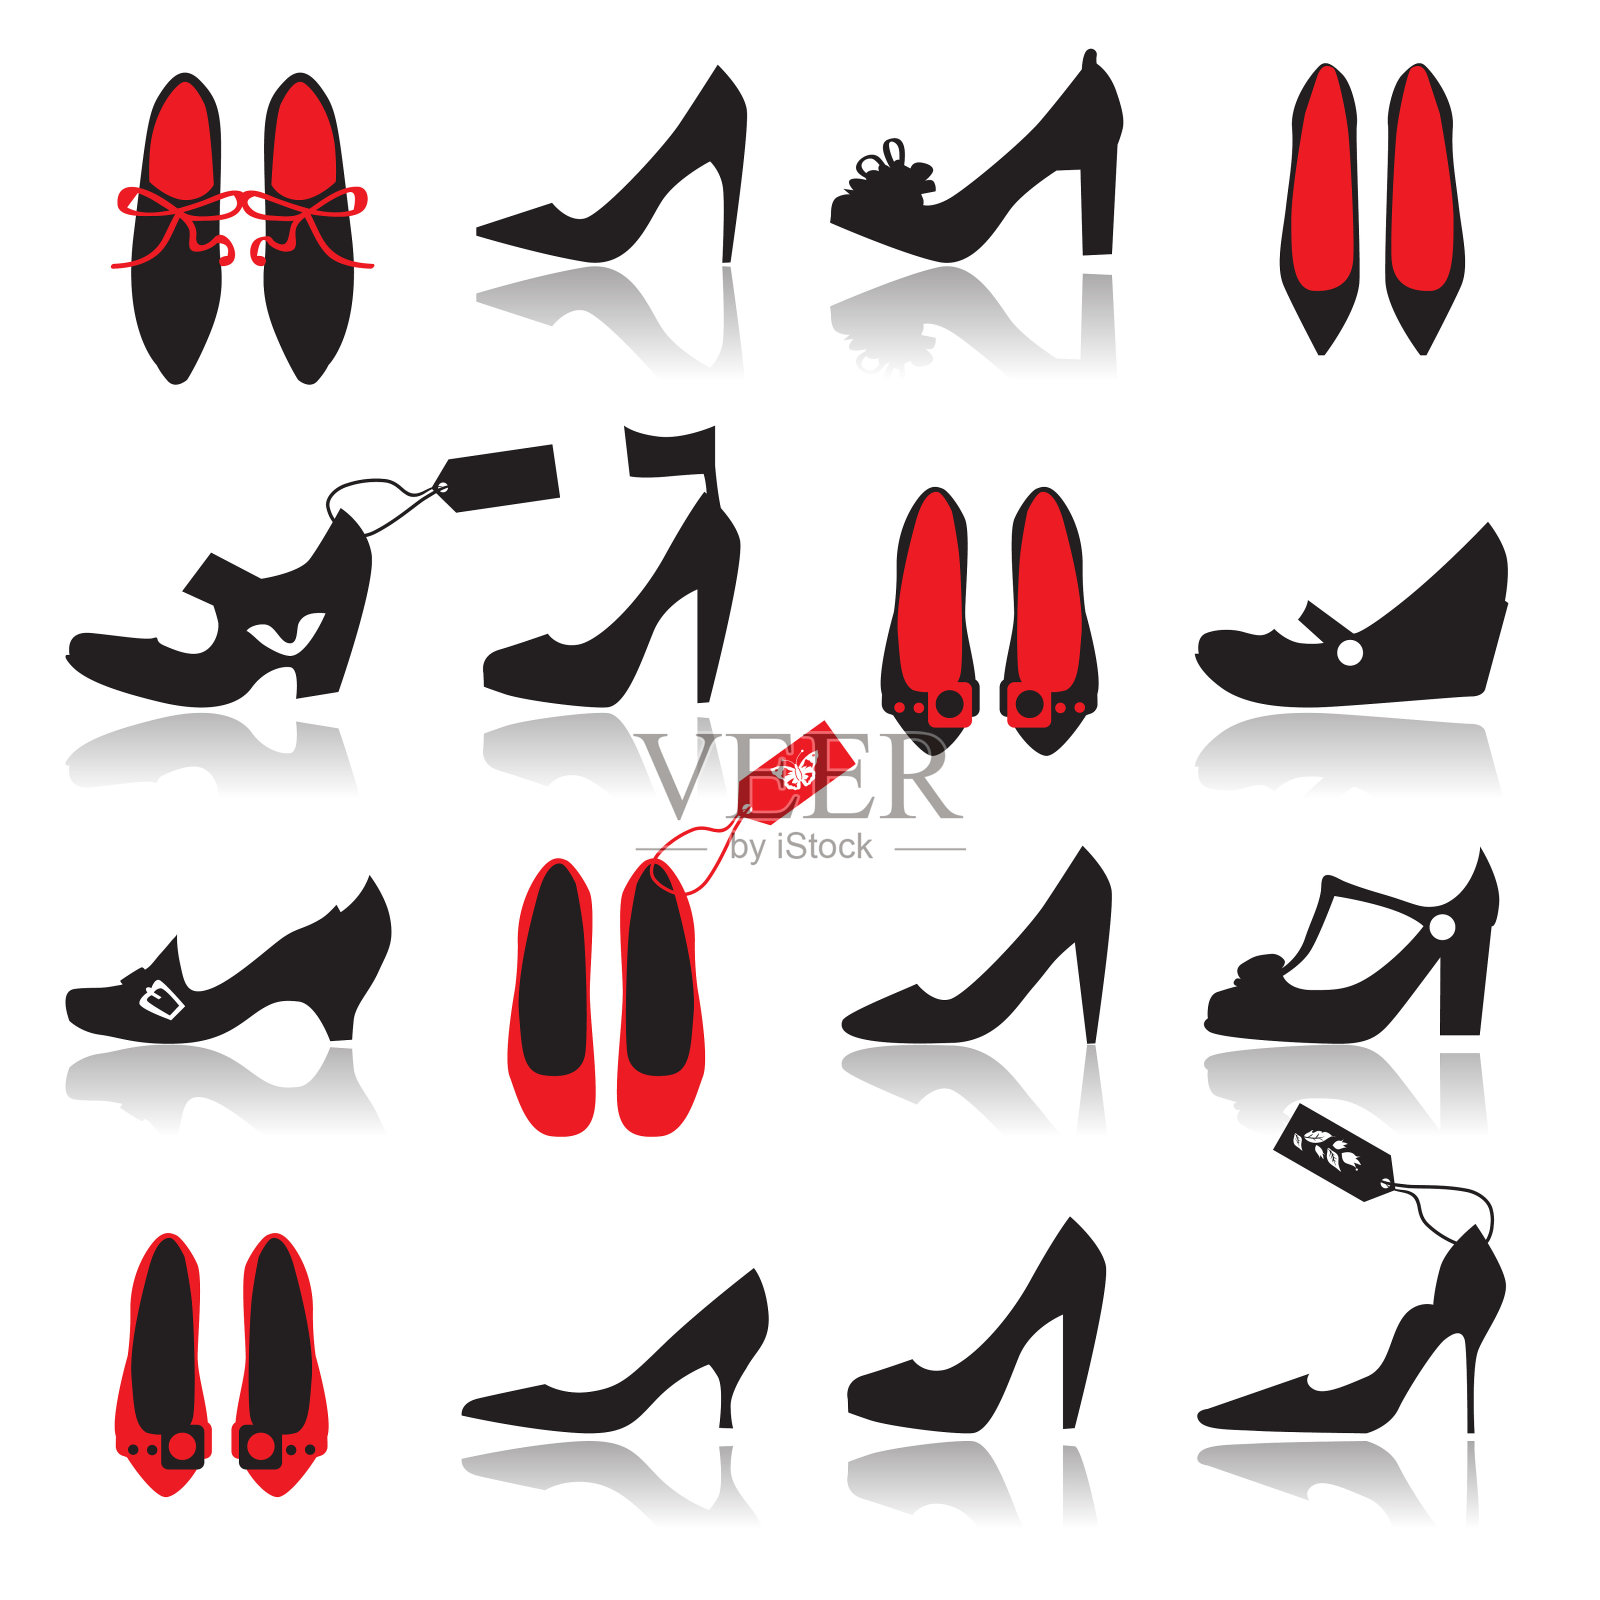 一套16红色和黑色的鞋子在各种风格插画图片素材